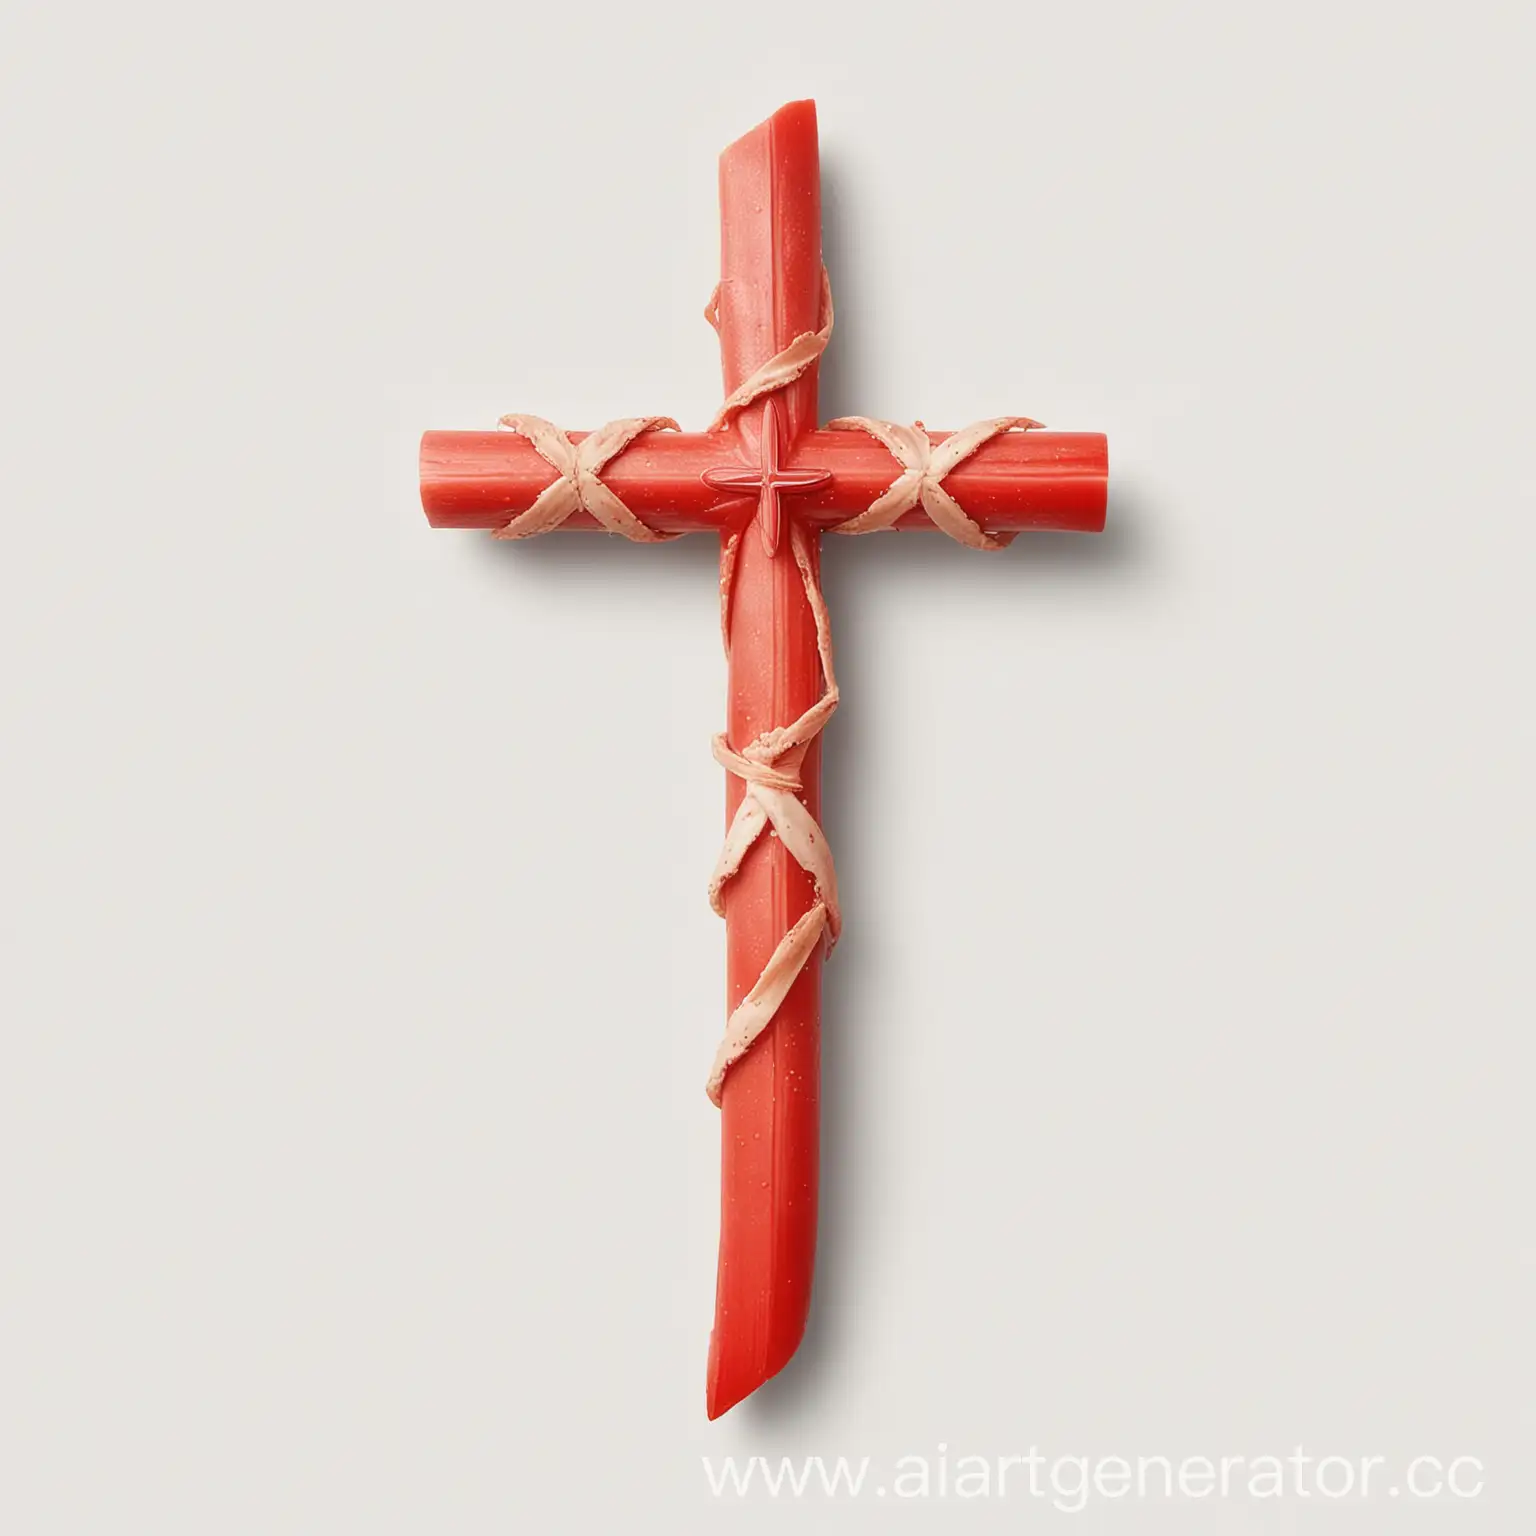 Христианский крести из крабовых палочек, реалистичный, на белом фоне

